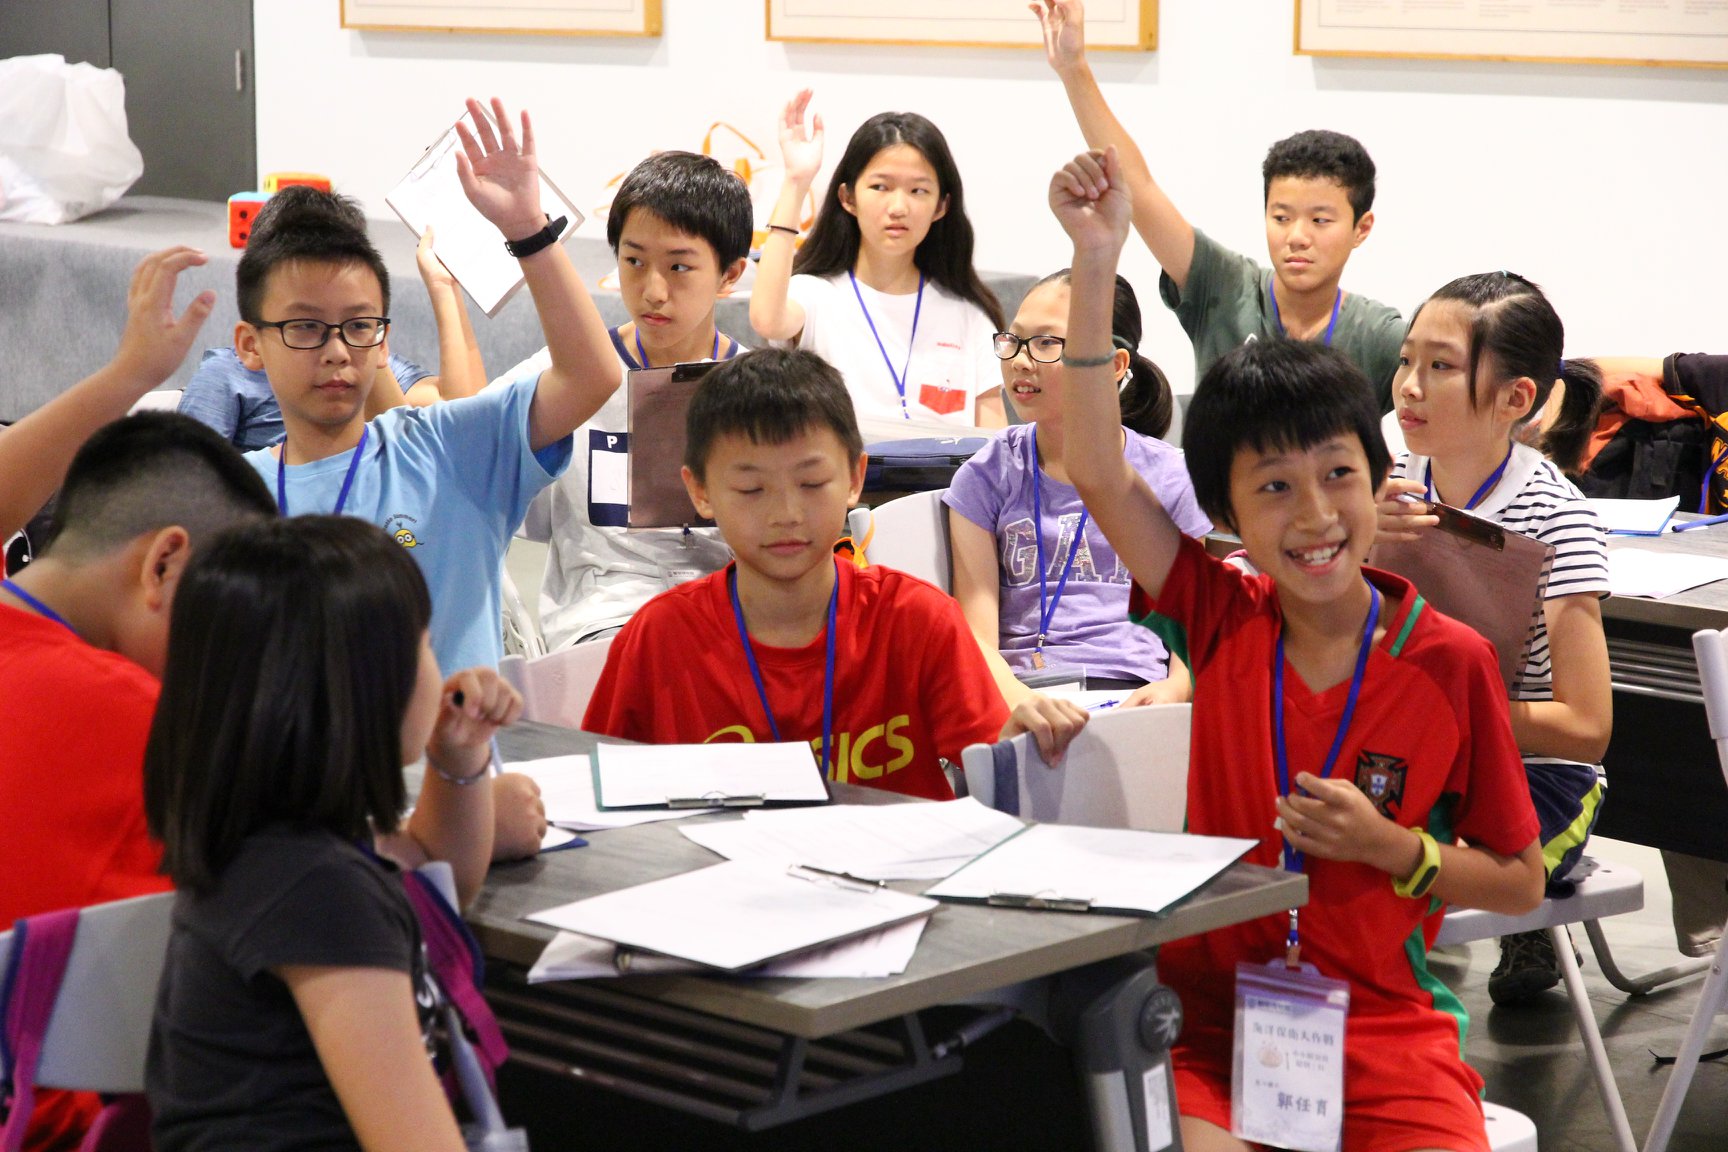 2019年蘭陽博物館守護海洋全面啟動計畫-小小解說員培訓:學員舉手回答問題(點擊放大)